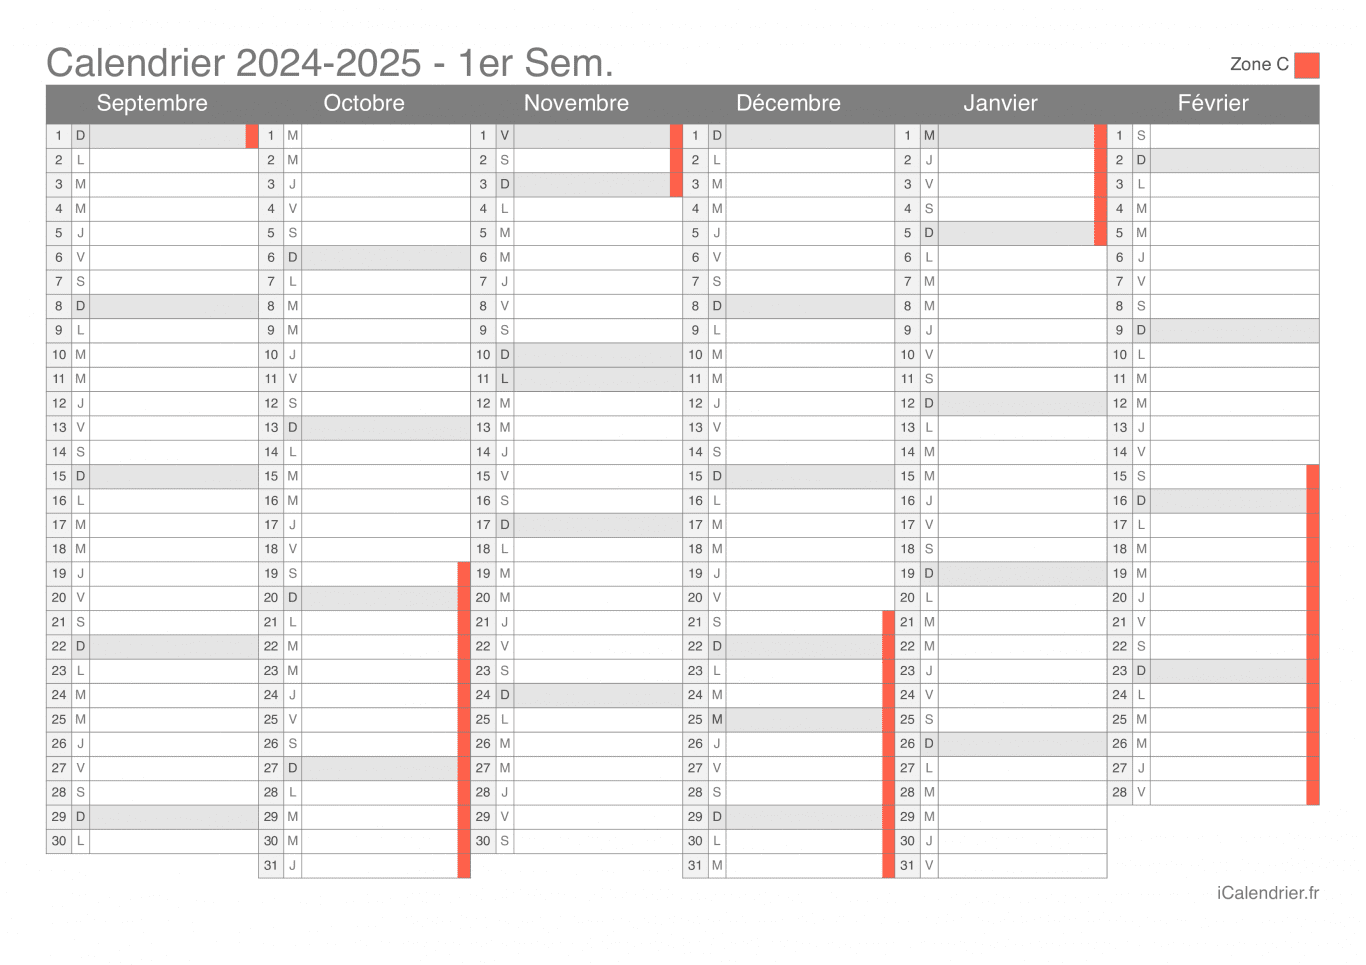 Calendrier des vacances scolaires 2024-2025 par semestre de la zone C